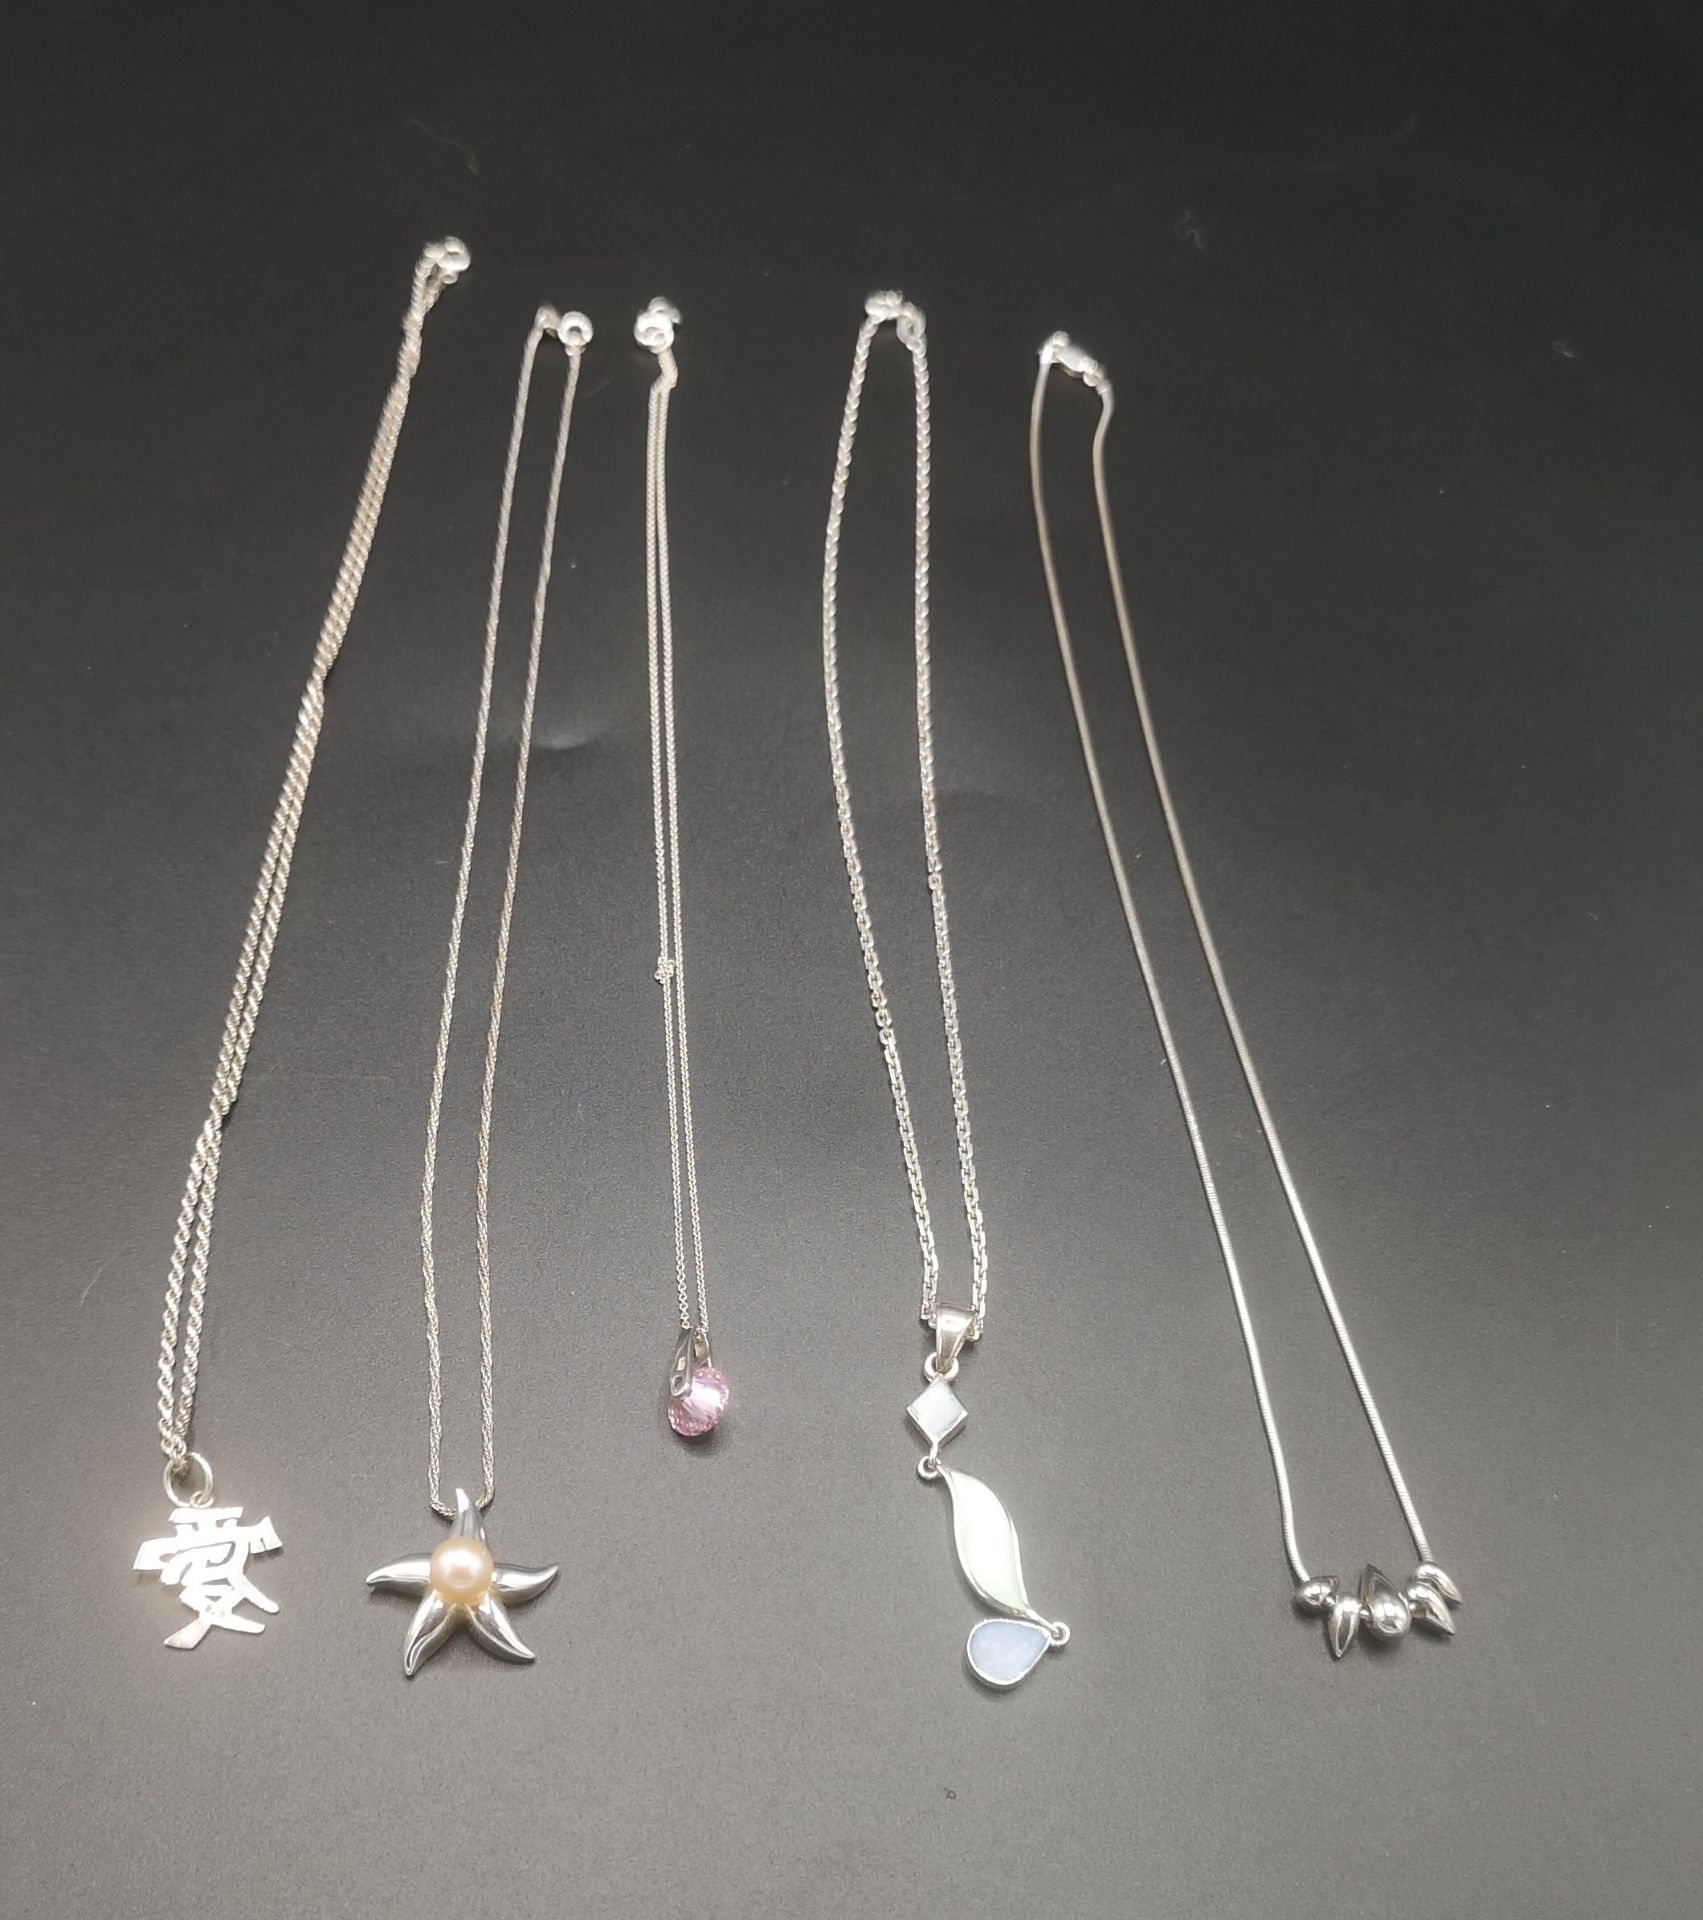 Five silver necklaces